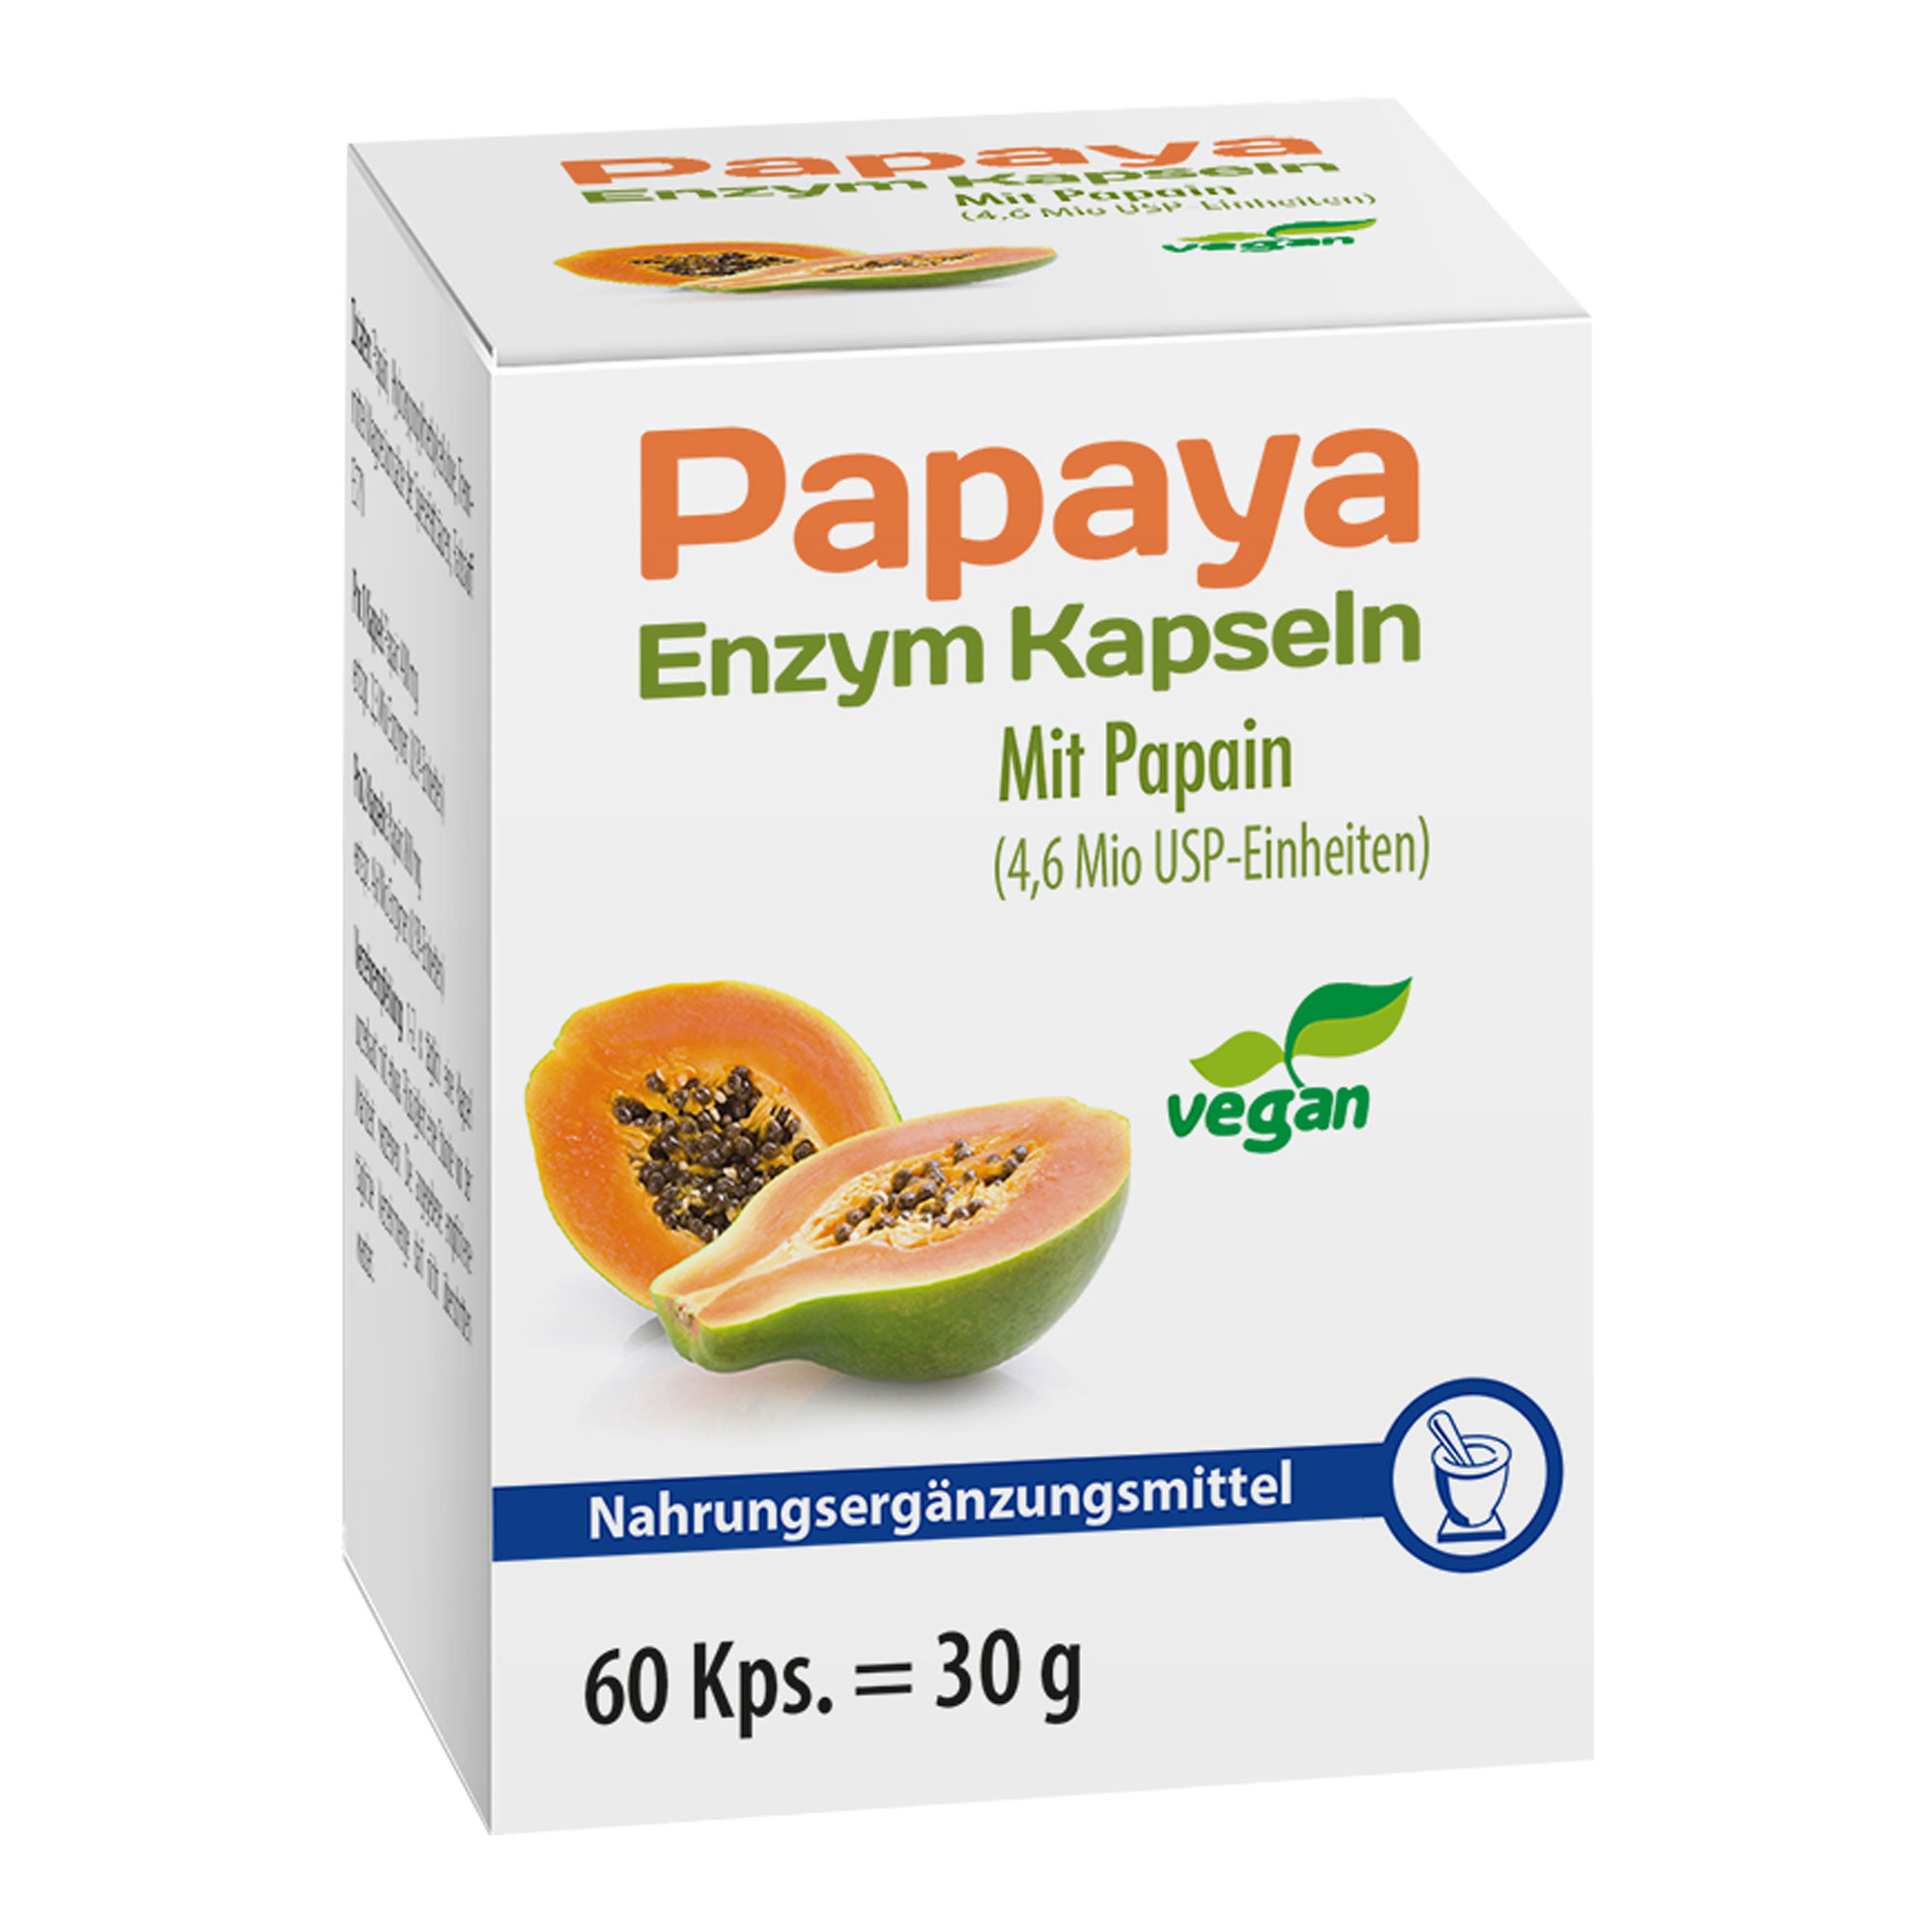 Nahrungsergänzungsmittel mit dem Enzym Papain.